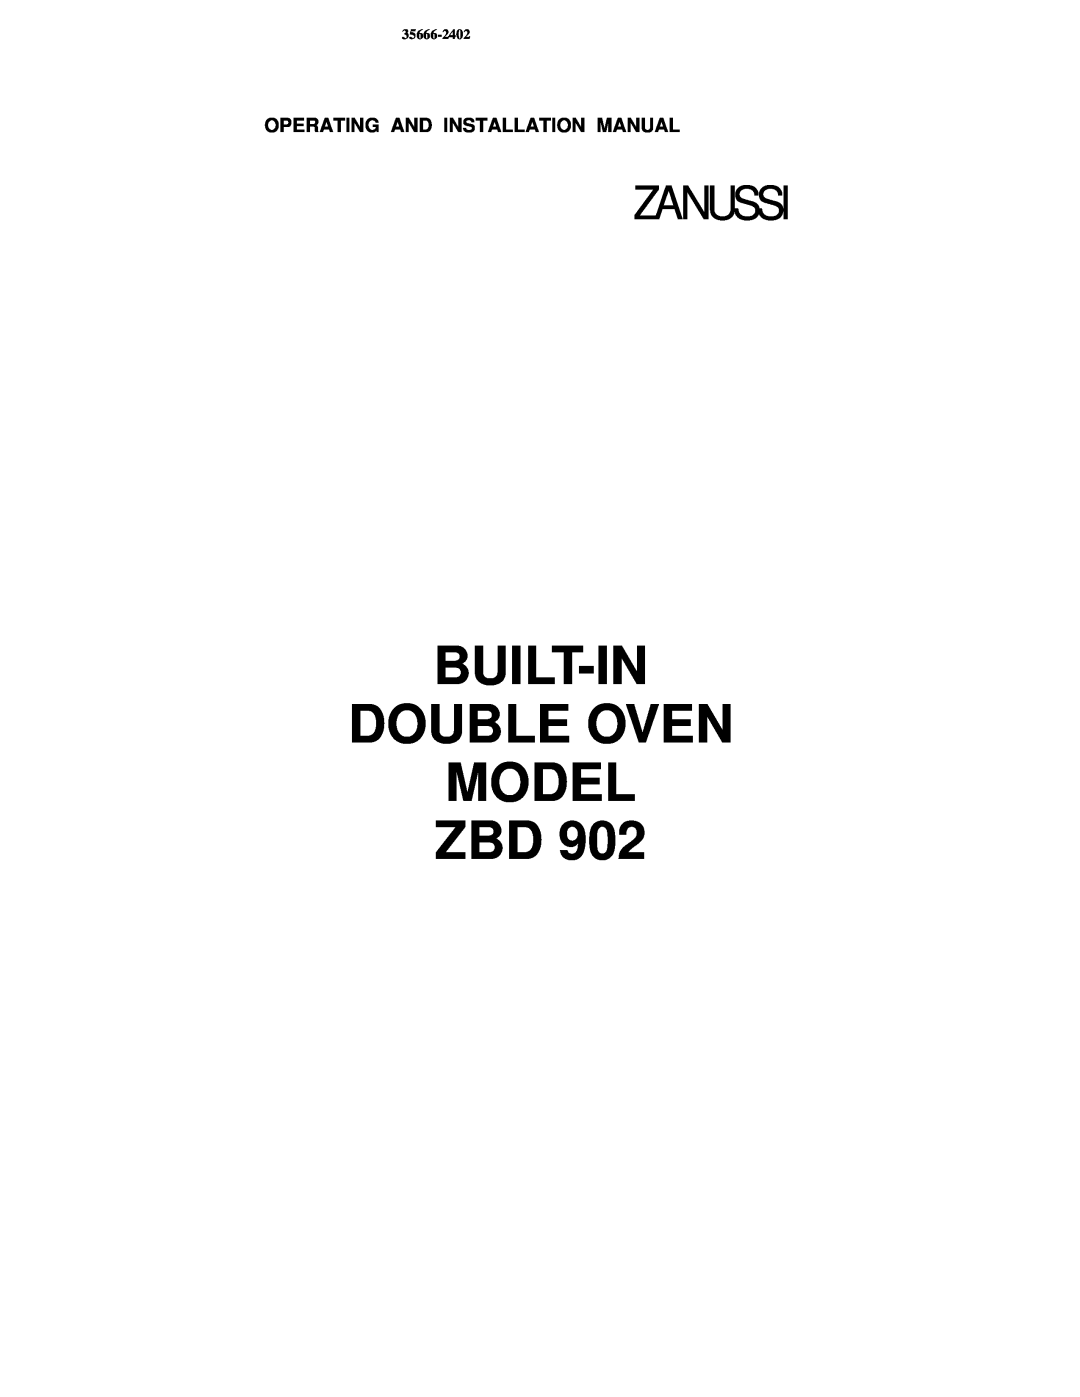 Zanussi ZBD 902 installation manual Built-In Double Oven Model Zbd, Zanussi, 35666-2402 